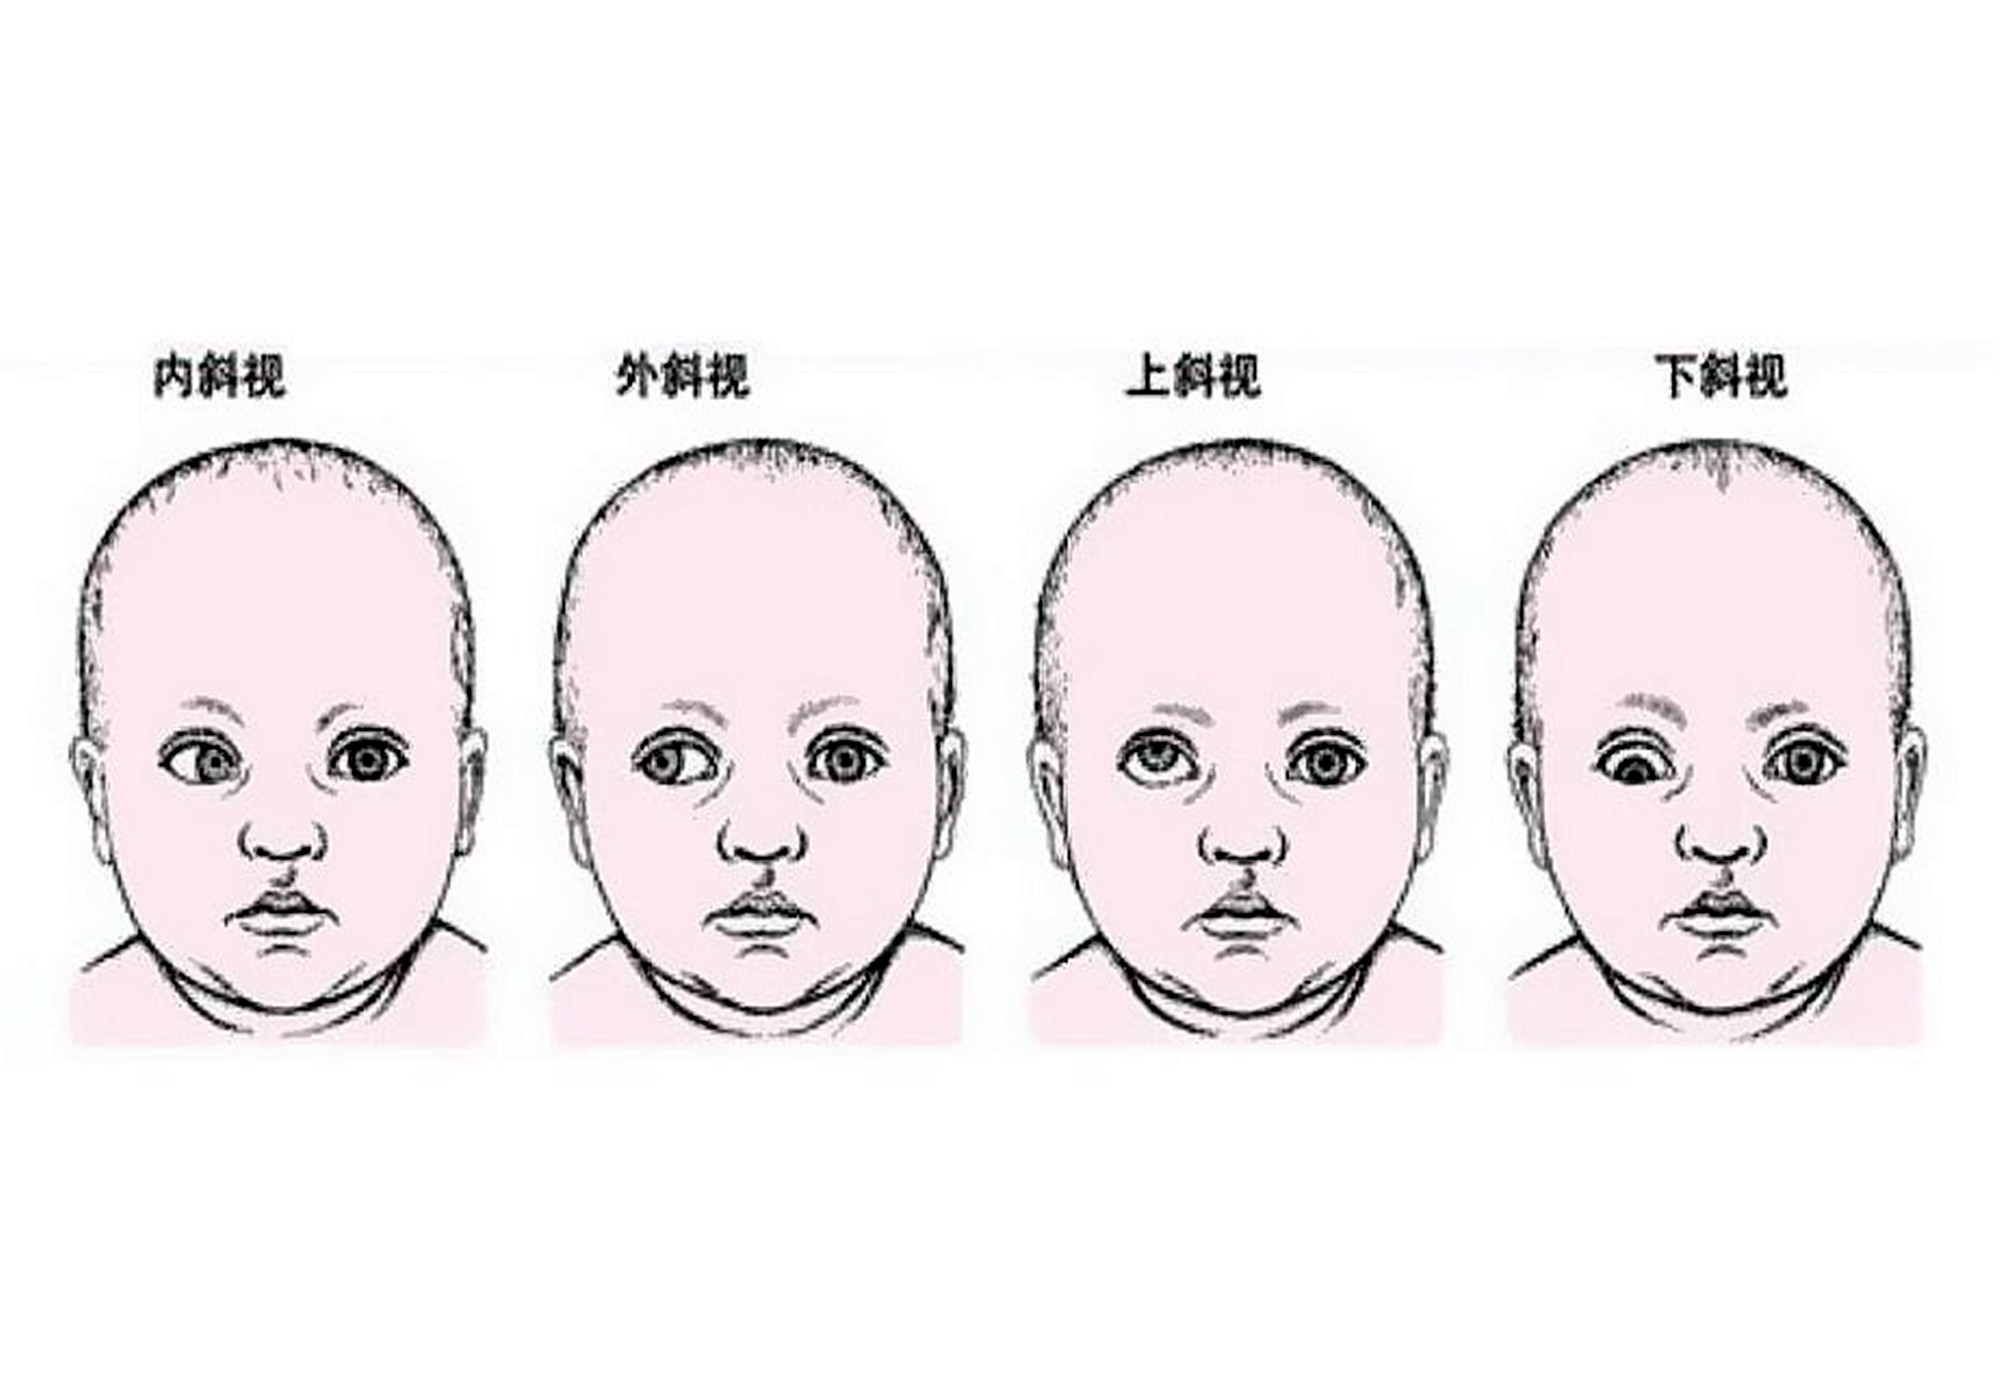 婴儿斗鸡眼照片(1岁宝宝求医遭拒) 